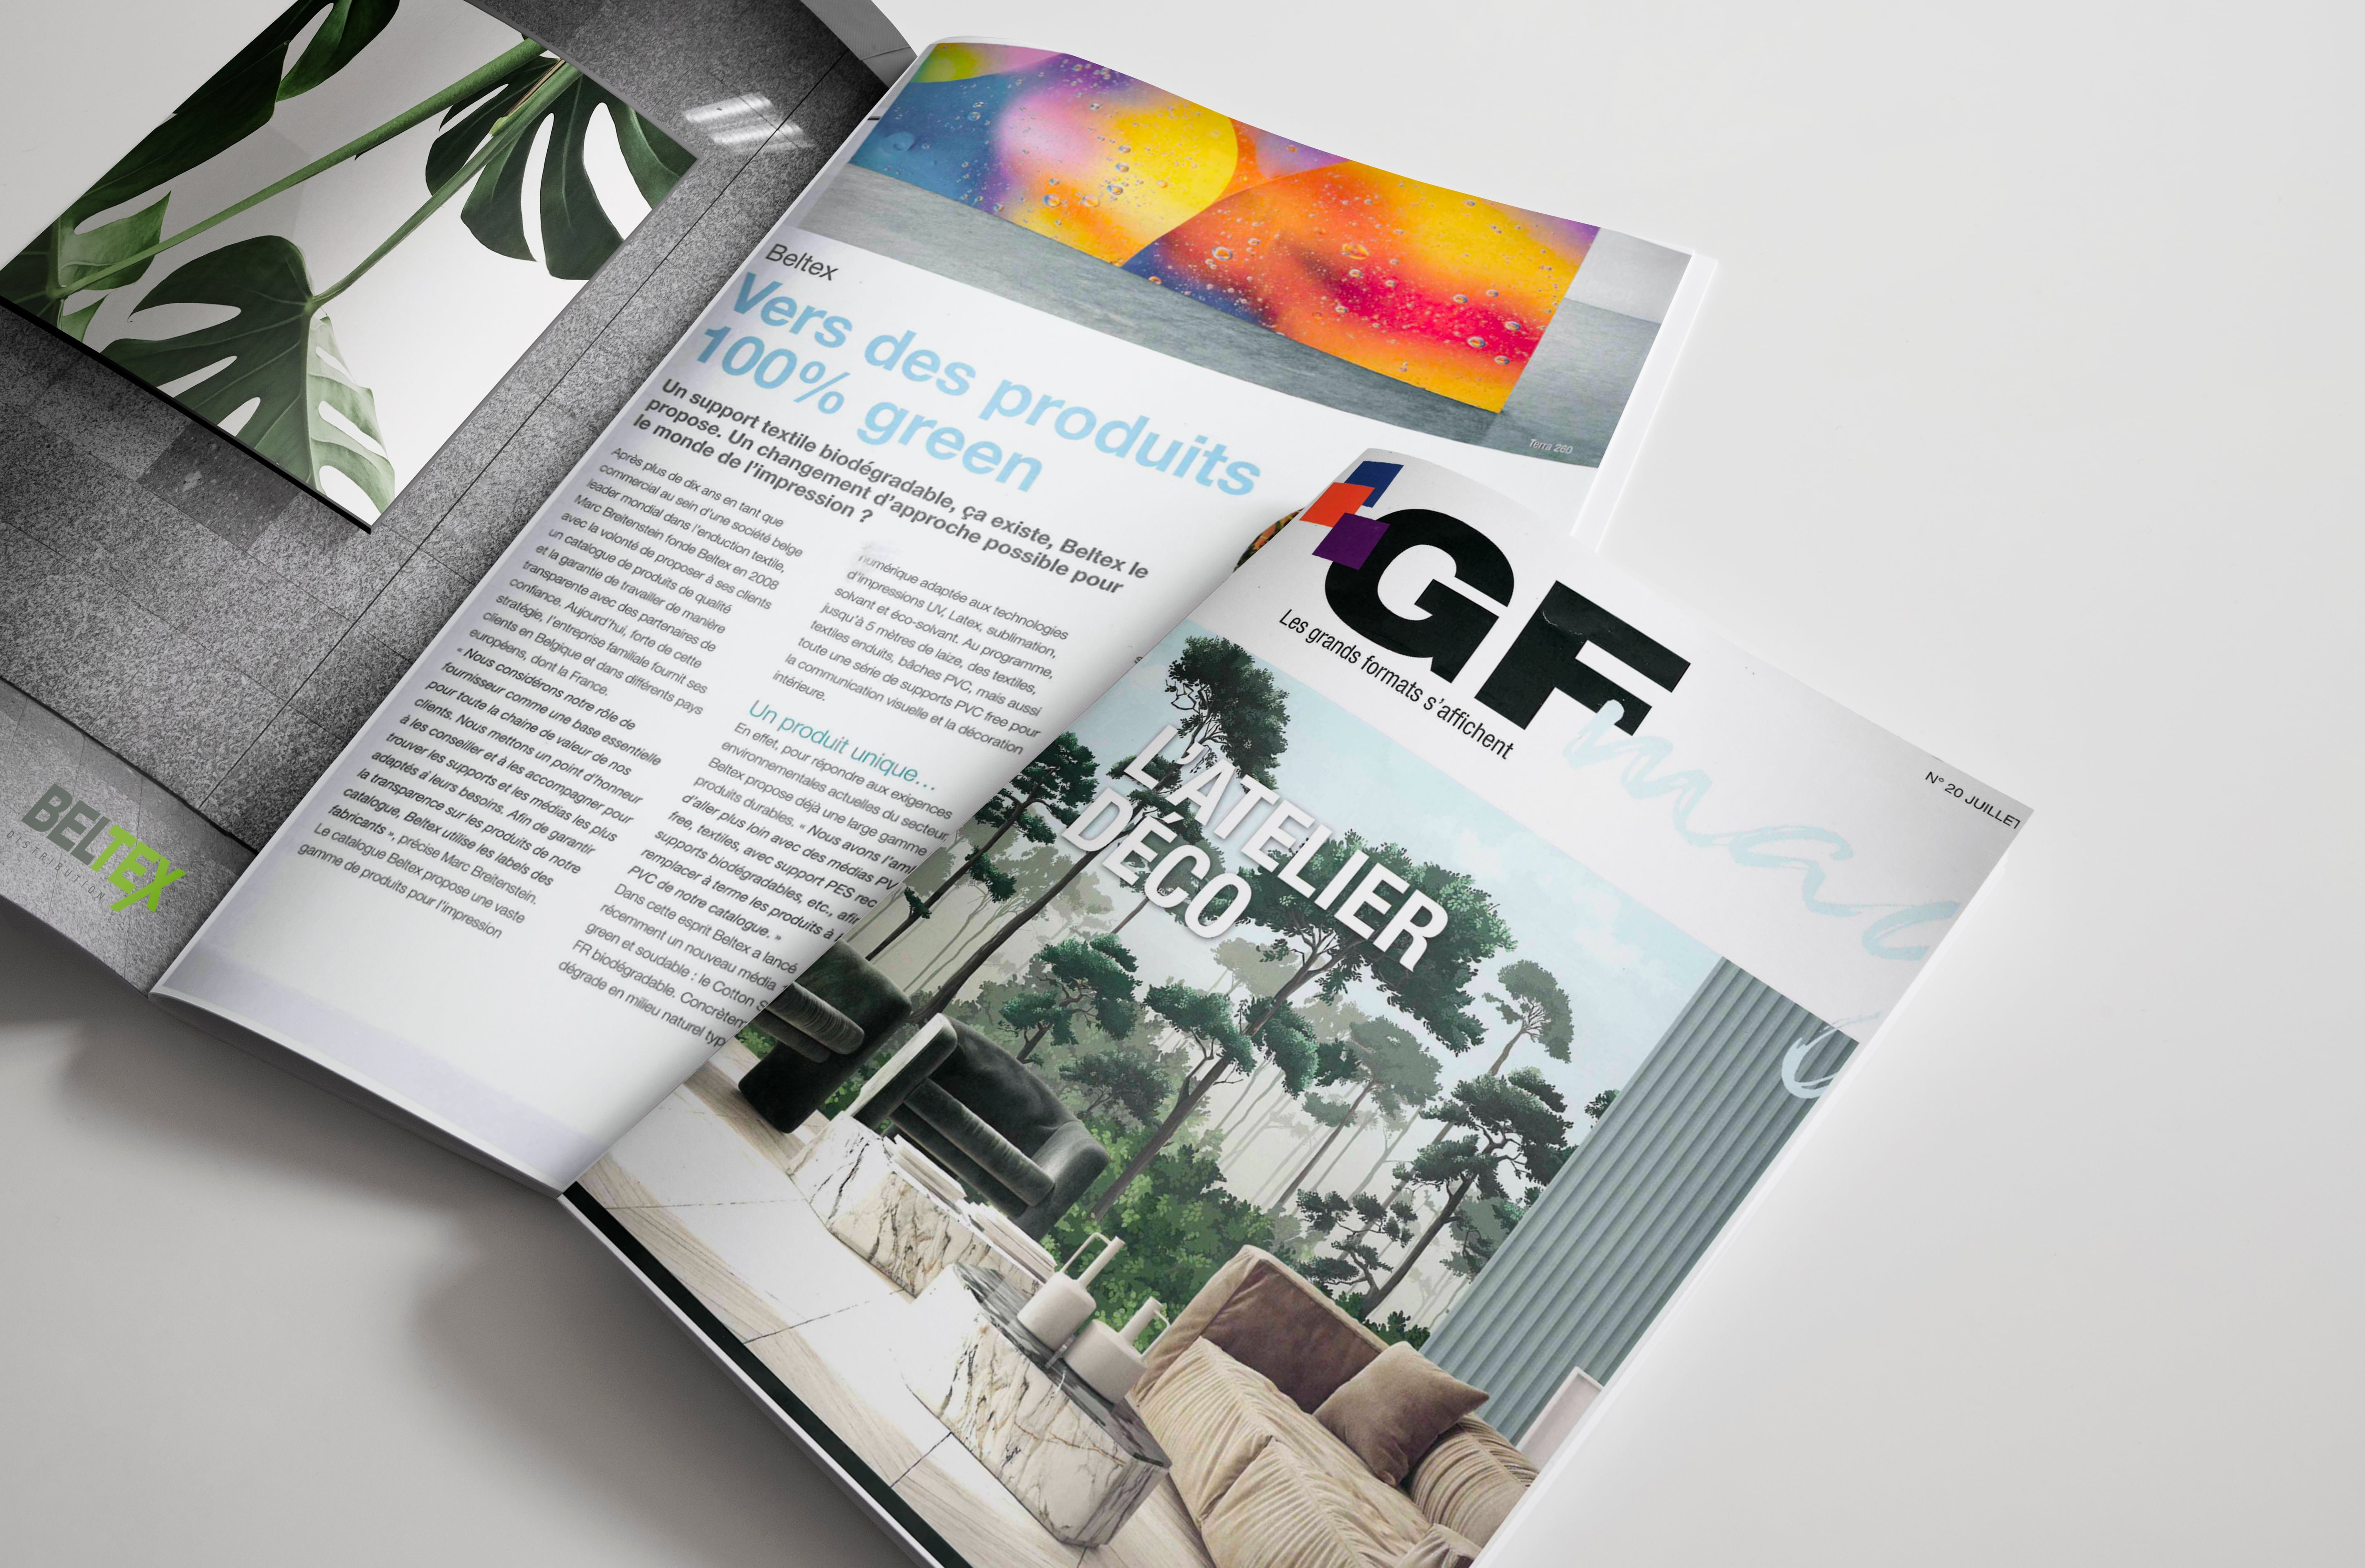 Das GF Magazin spricht über uns: Auf dem Weg zu 100% grünen Produkten